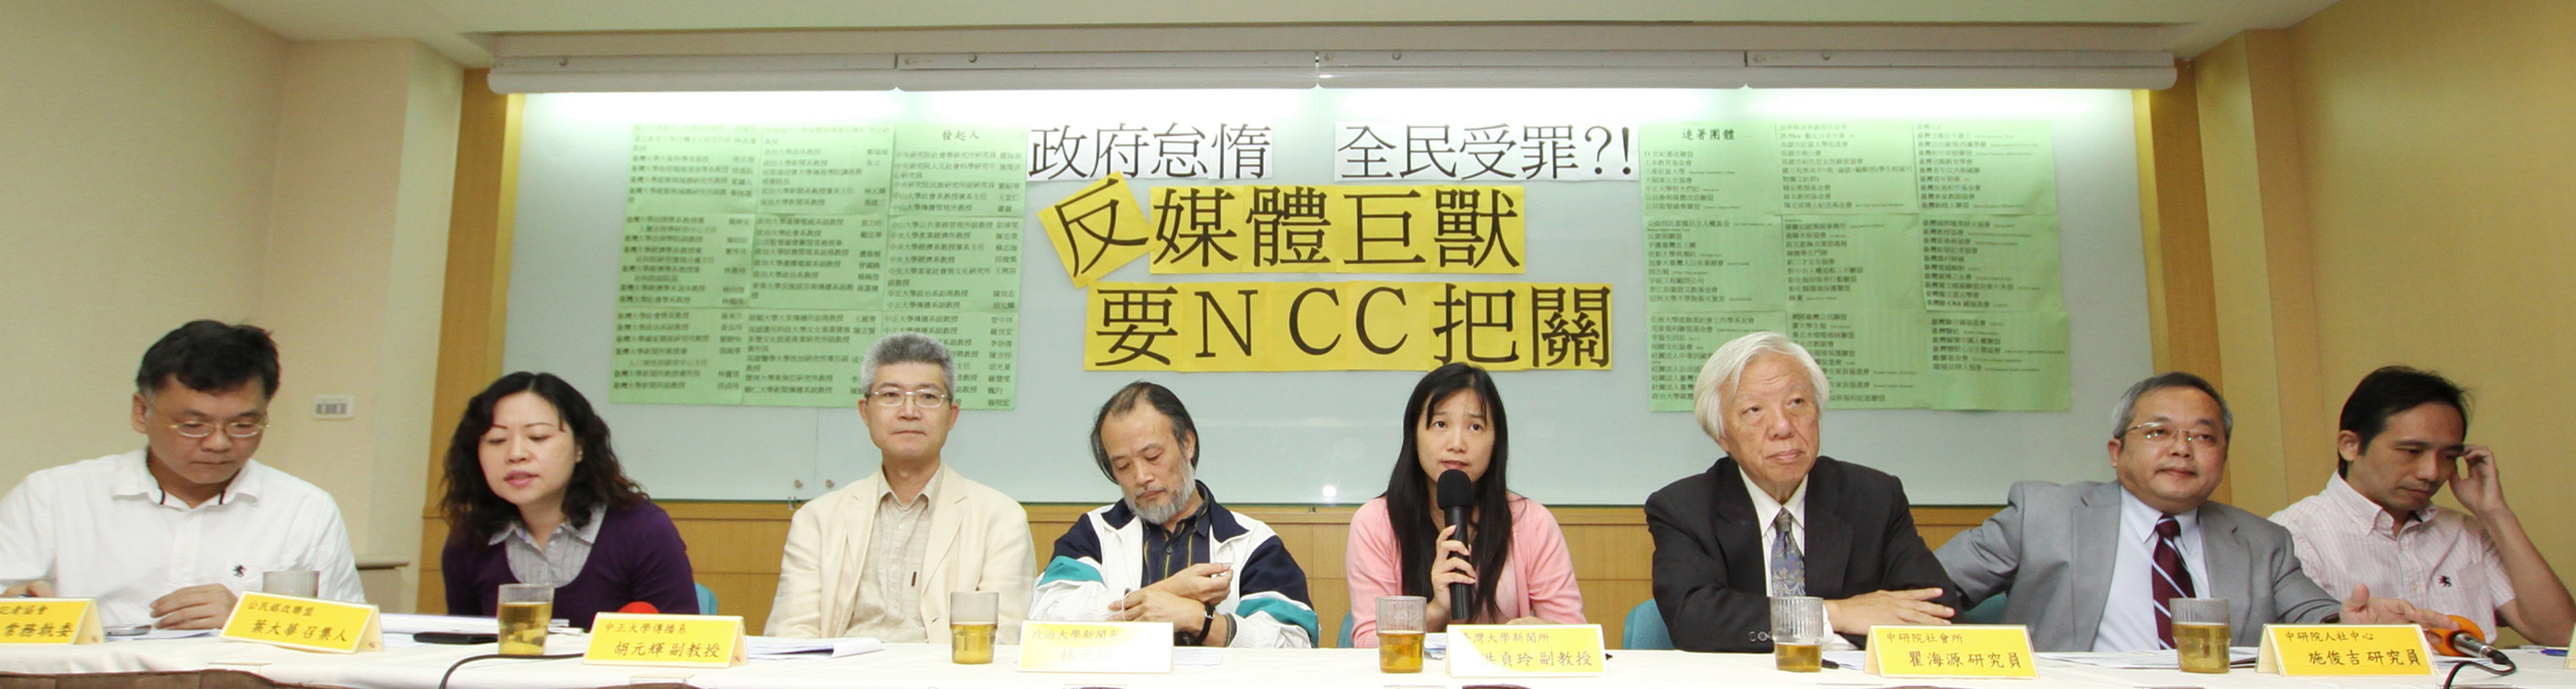 2011年10月，台灣有54位學者發起「媒體巨獸出沒請注意」的反對連署。林伯東攝影